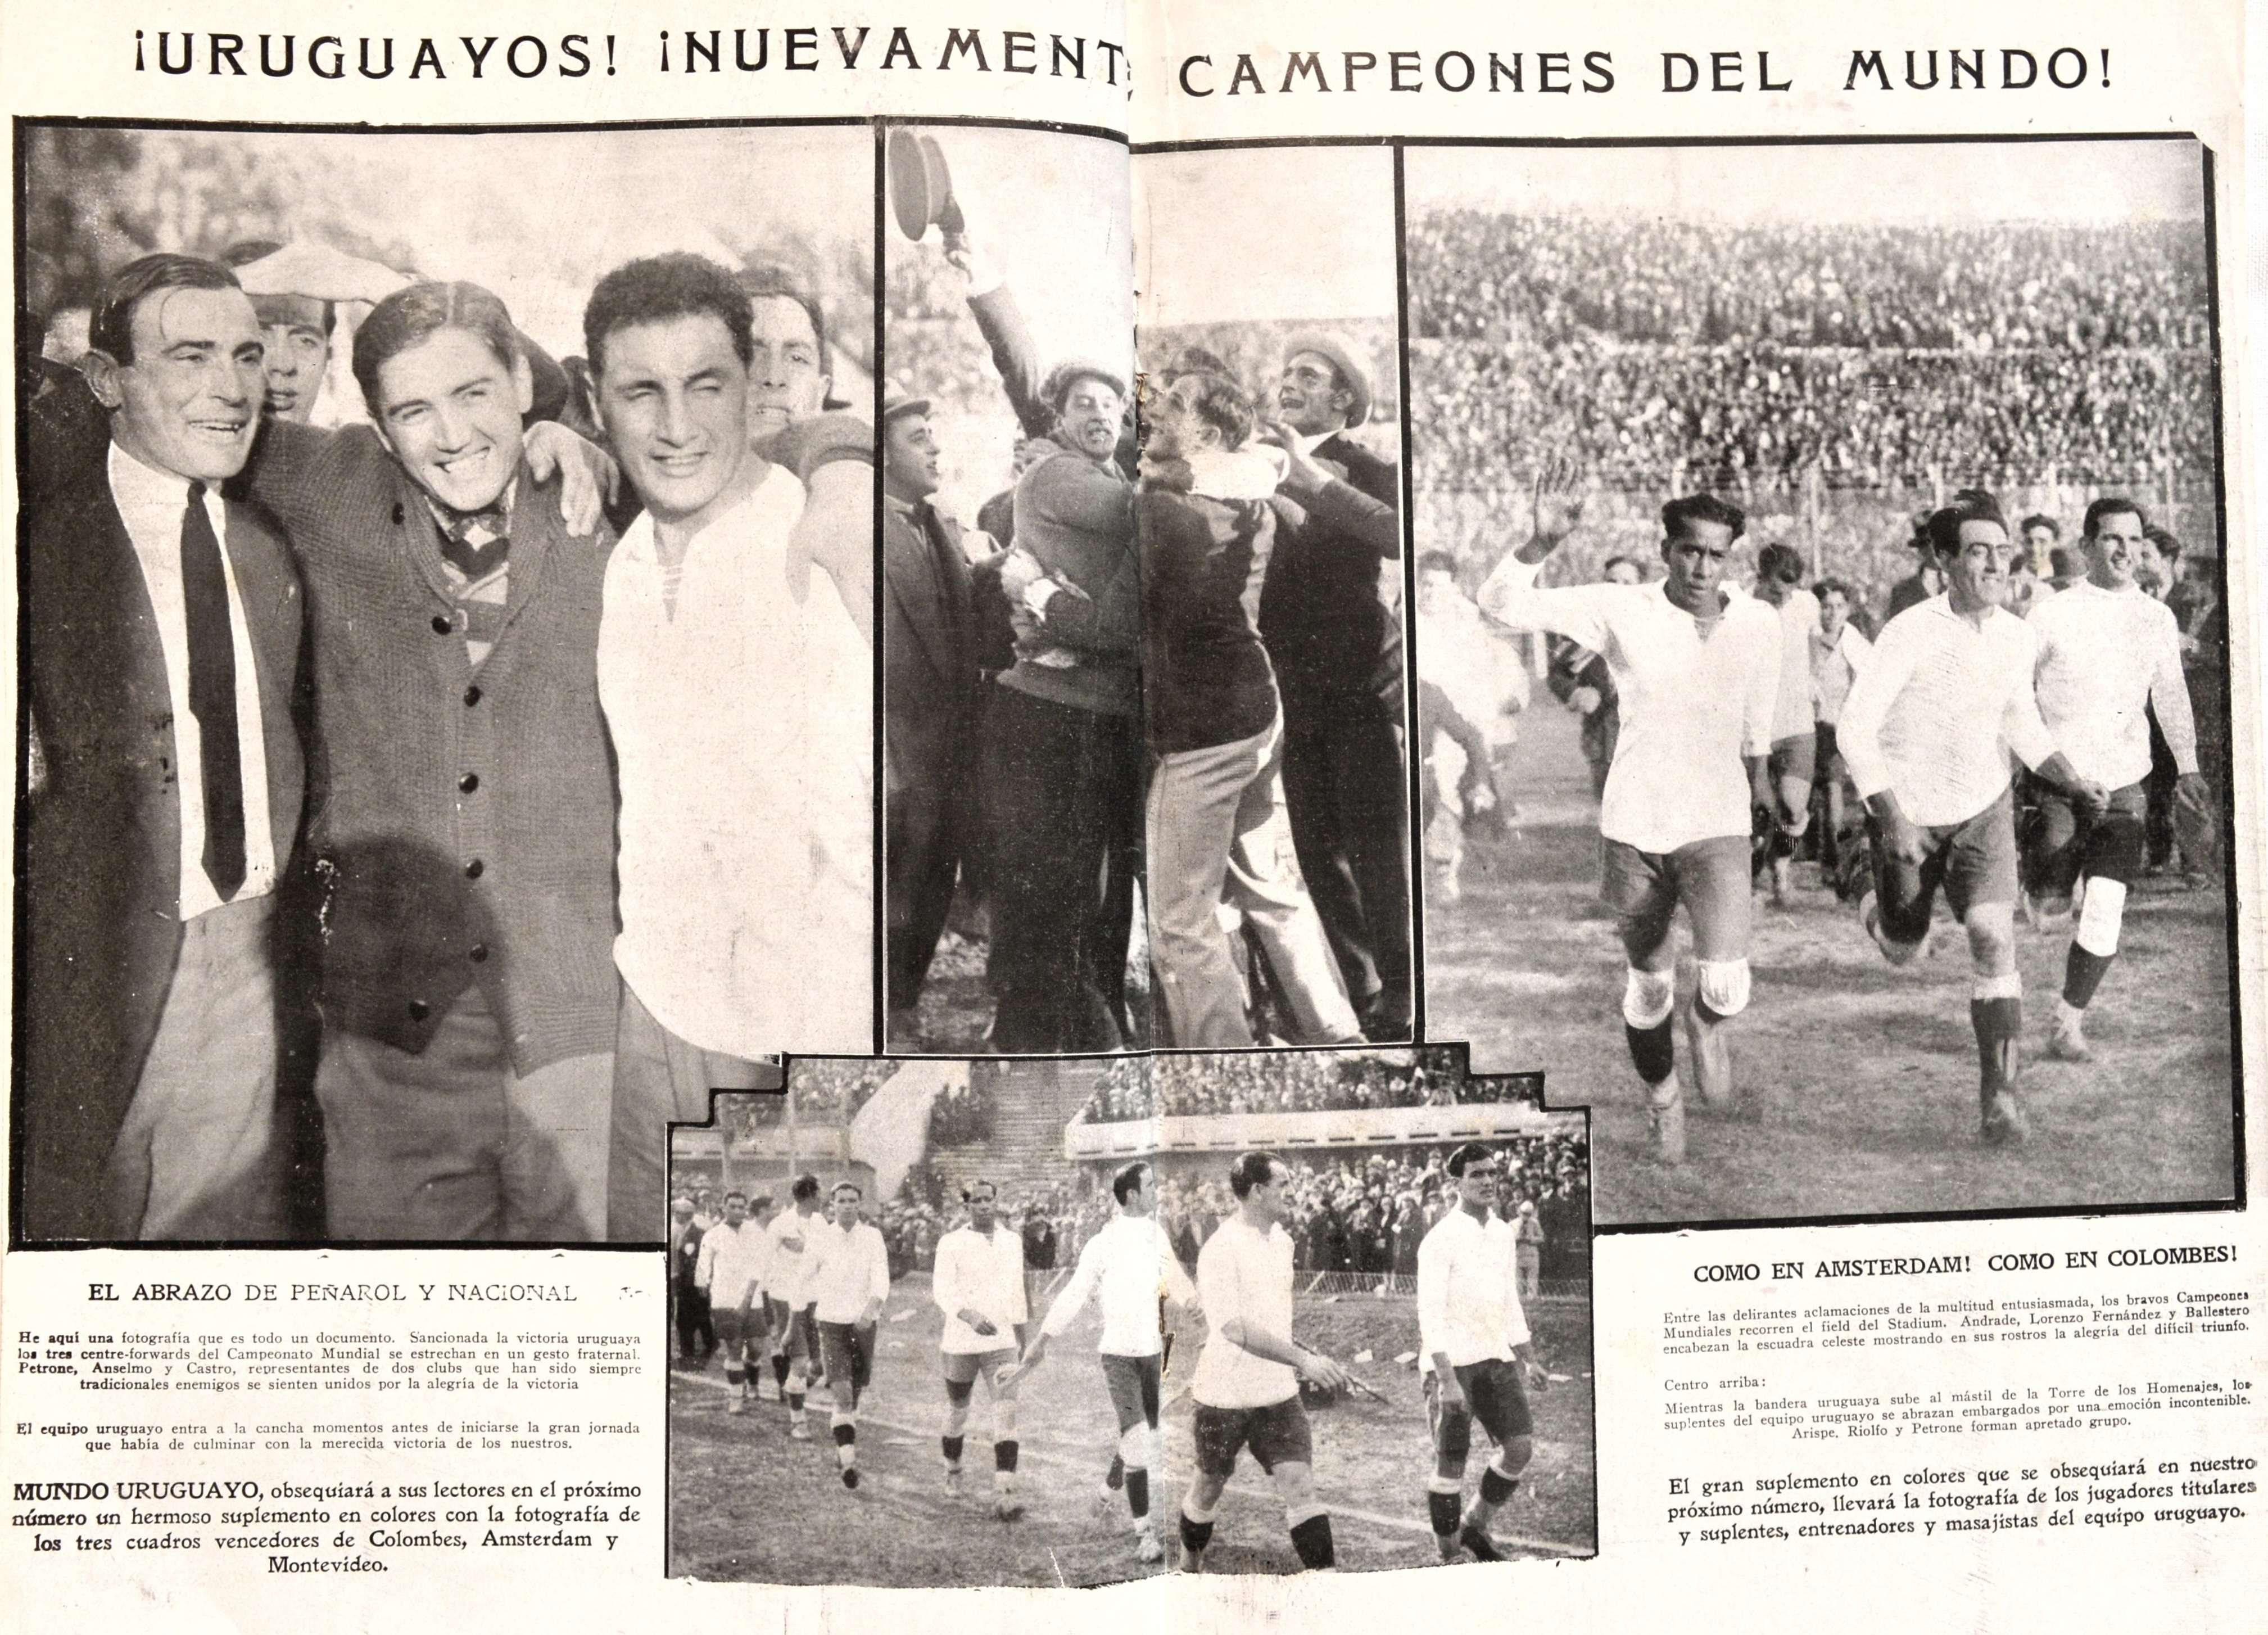 MUNDIAL URUGUAY 1930 🇺🇾 La 1ª Copa del Mundo